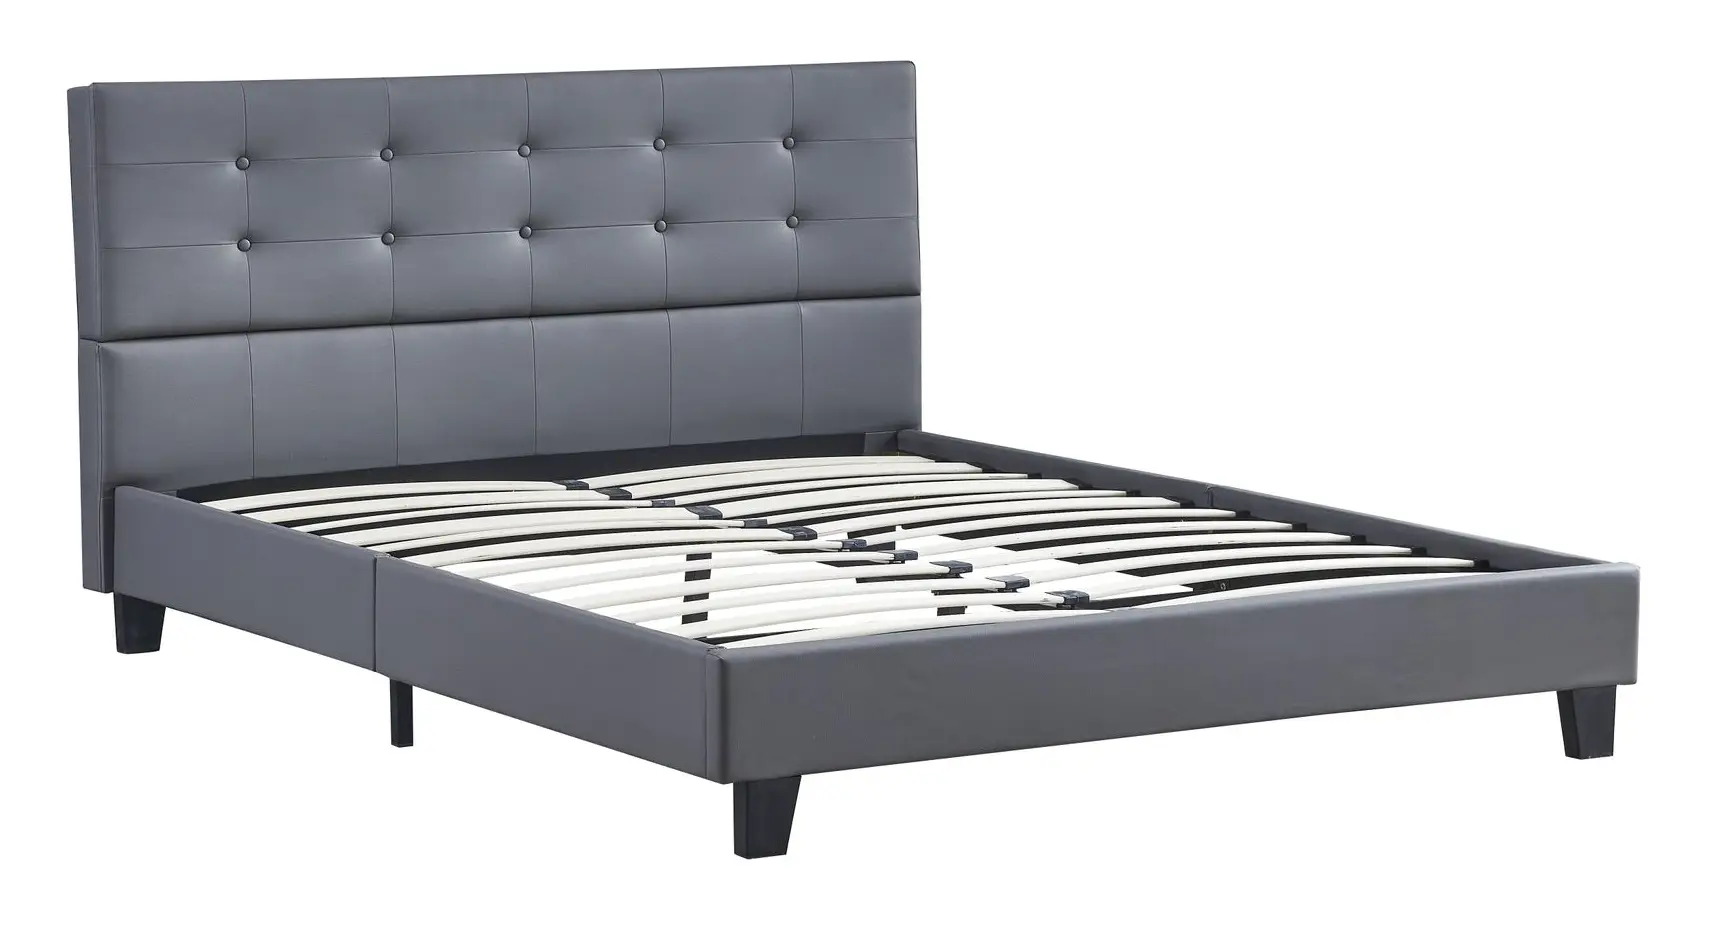 Bett aus grauem Kunstleder 140x190cm